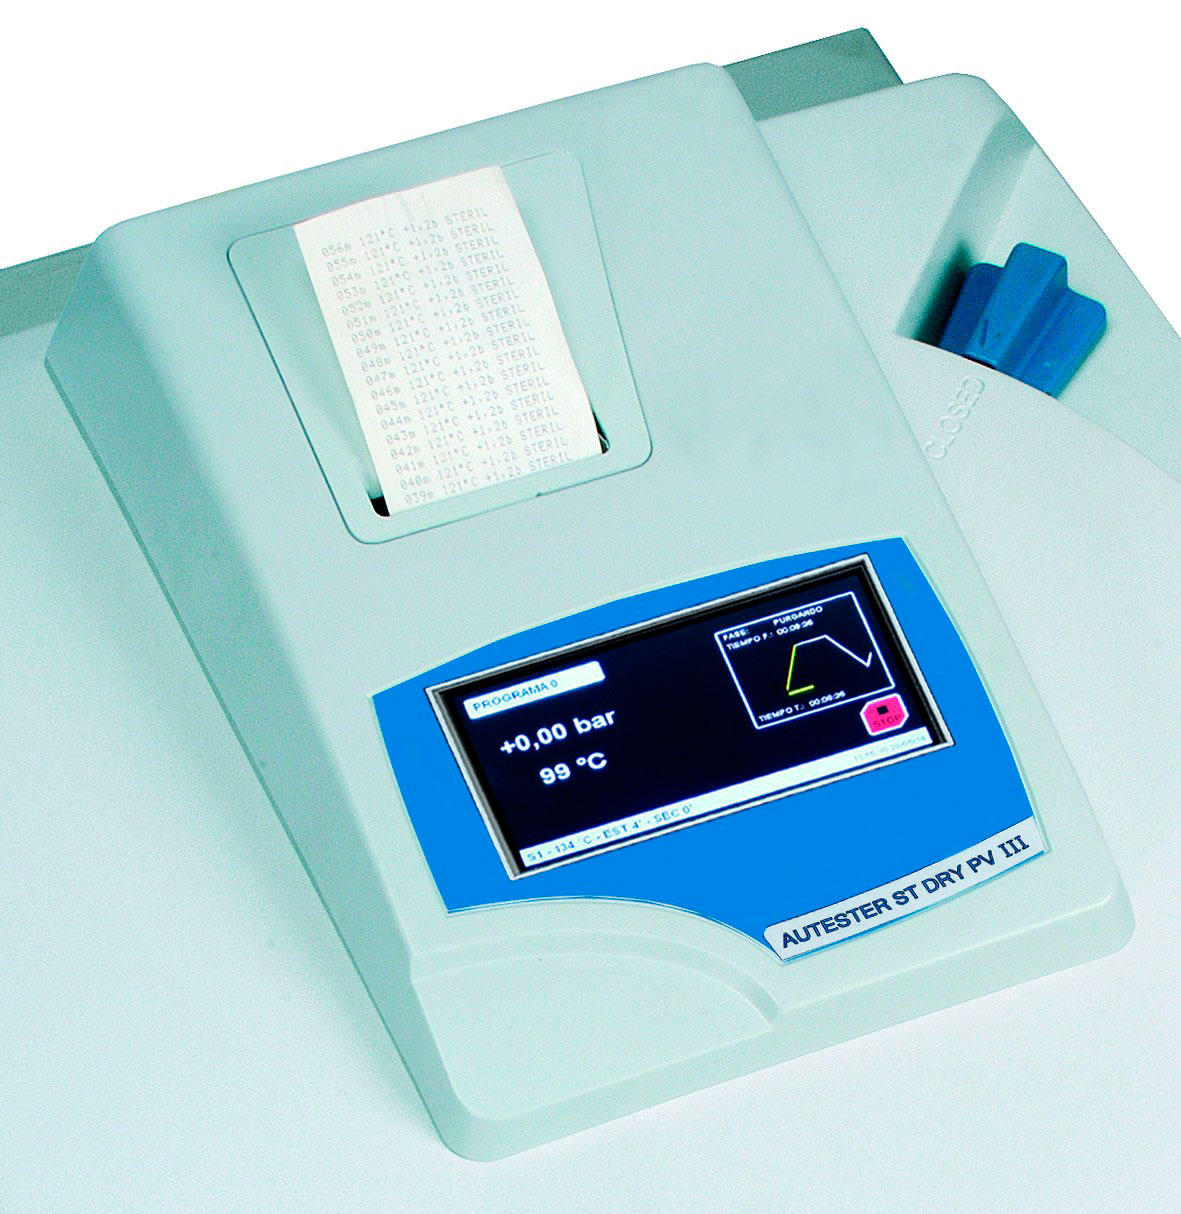 Impresora térmica J.P. SELECTA para Presoclave III y St DRY PV III. Impresora sobre papel continuo con indicación de temperatura, presión, tiempo y modalidad.